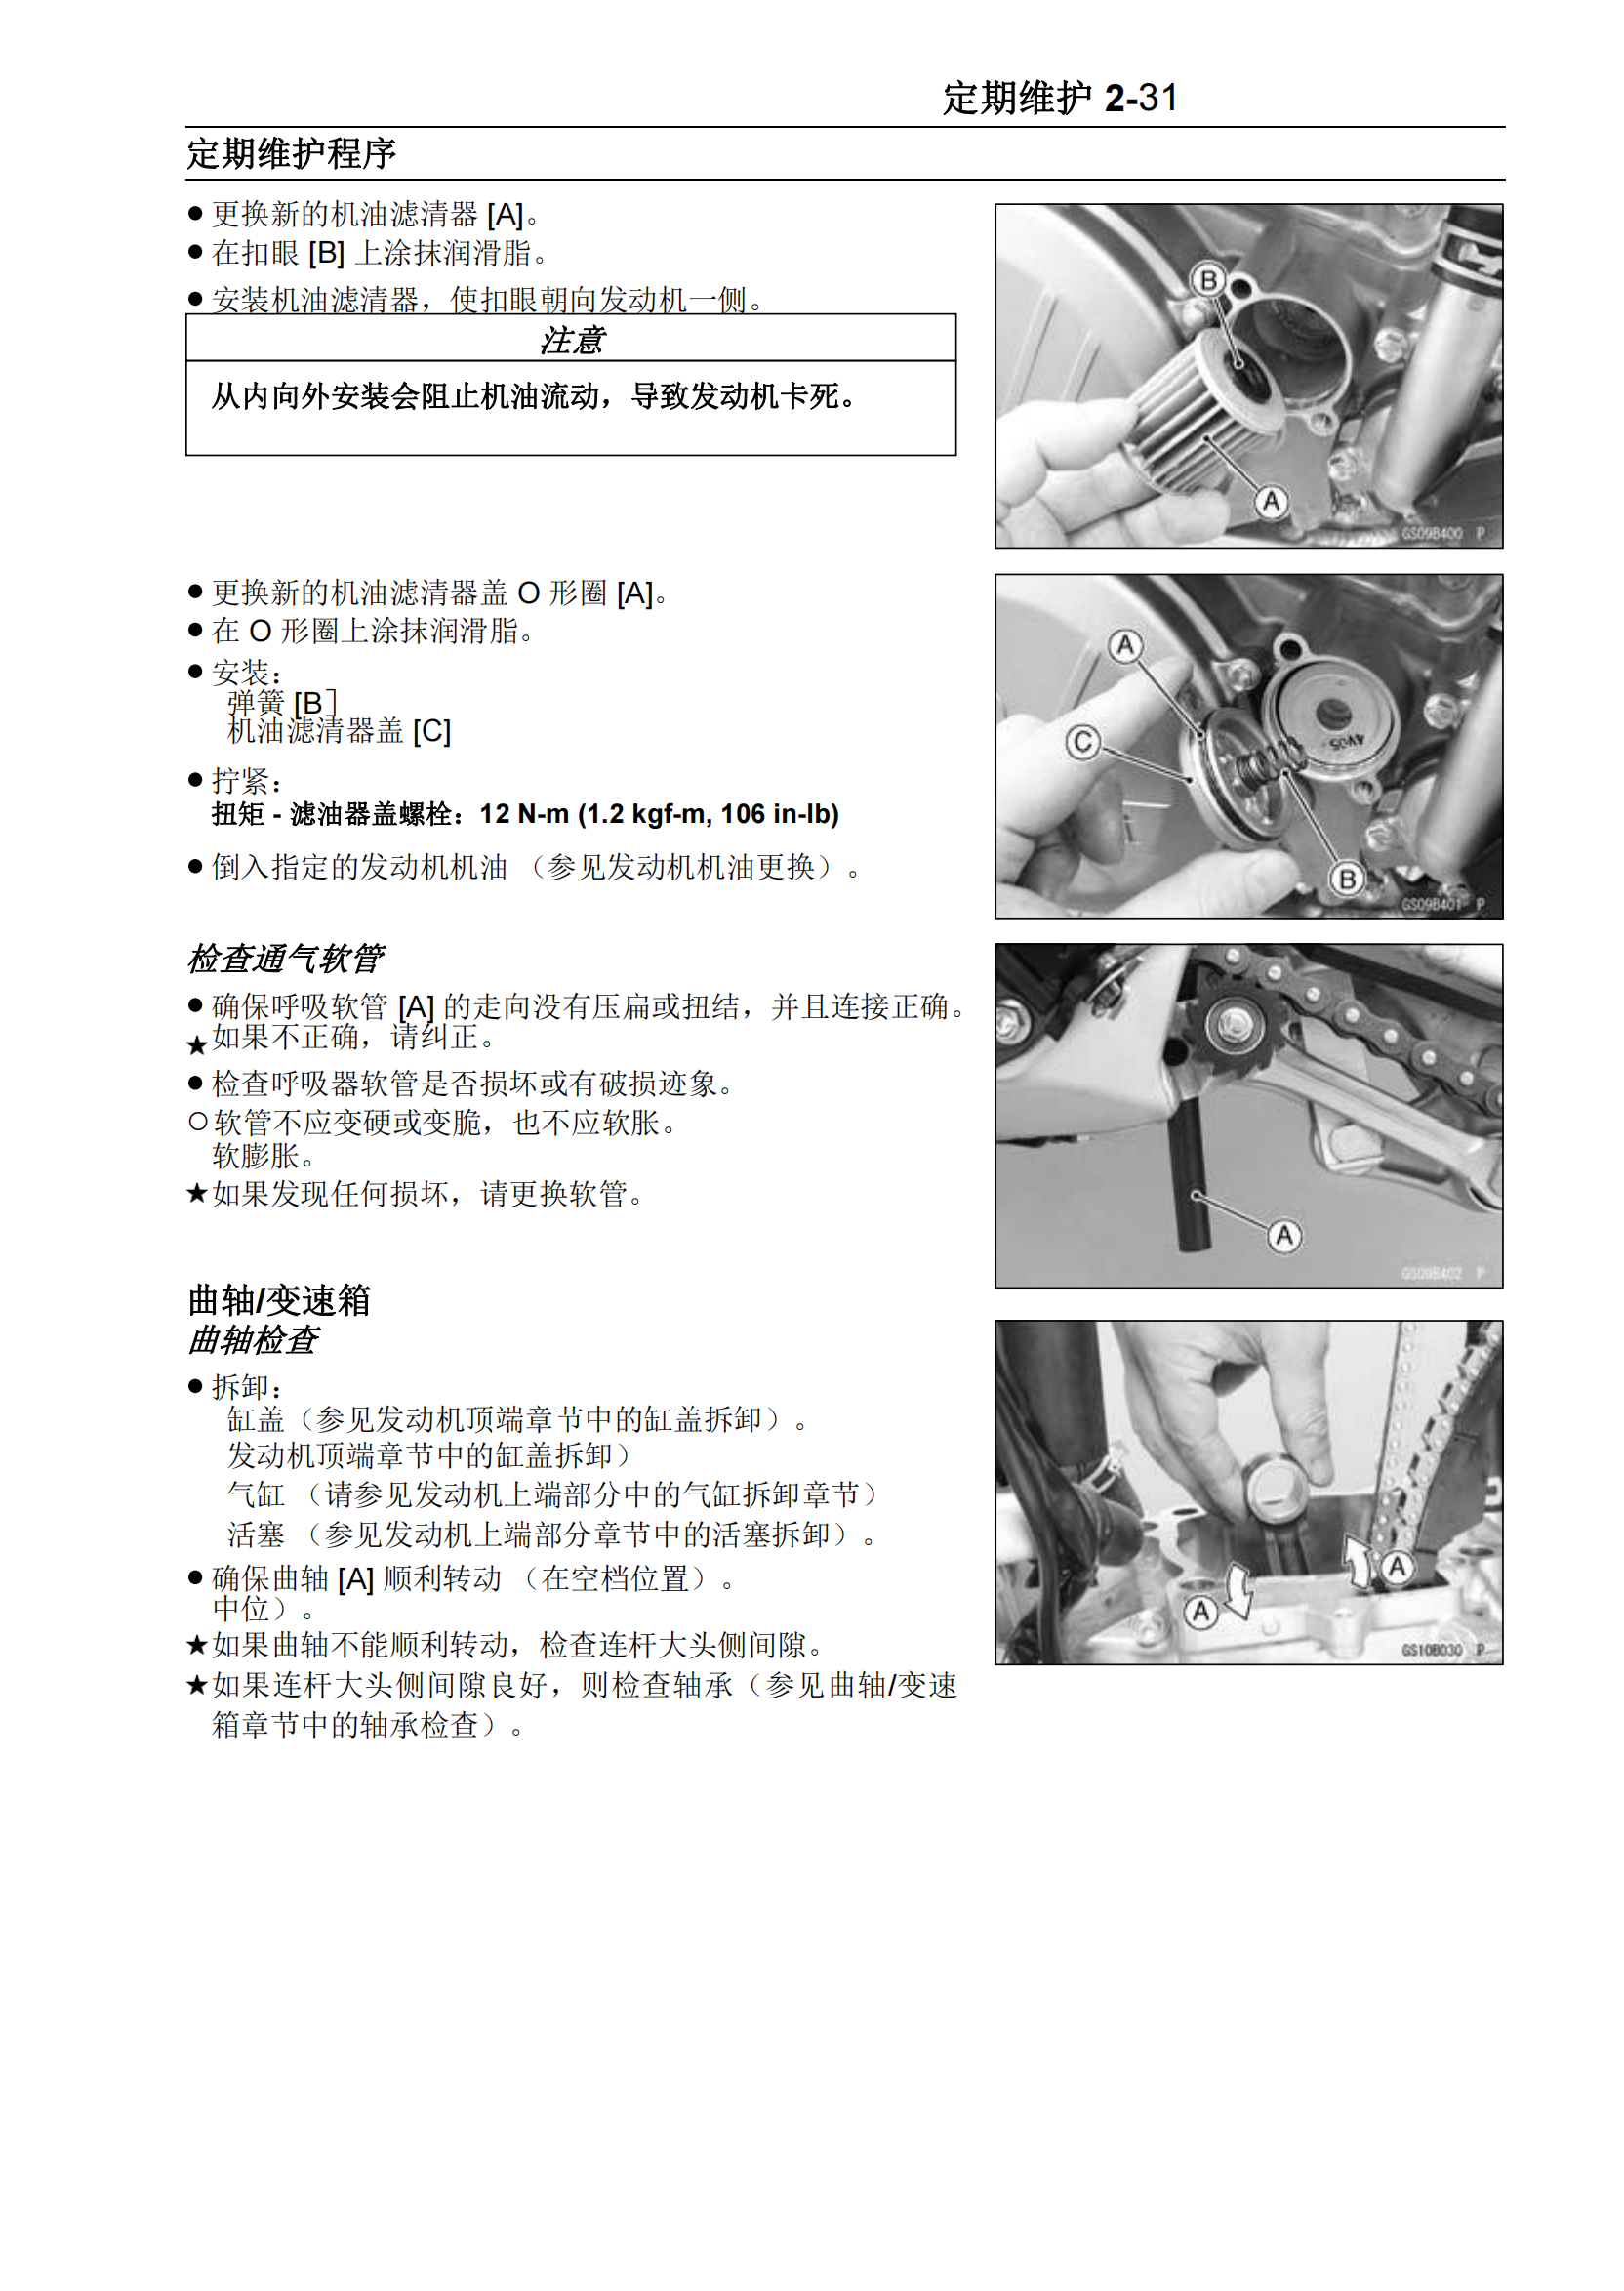 简体中文2016-2018年川崎kx450f维修手册kawasaki kx450f维修手册插图3